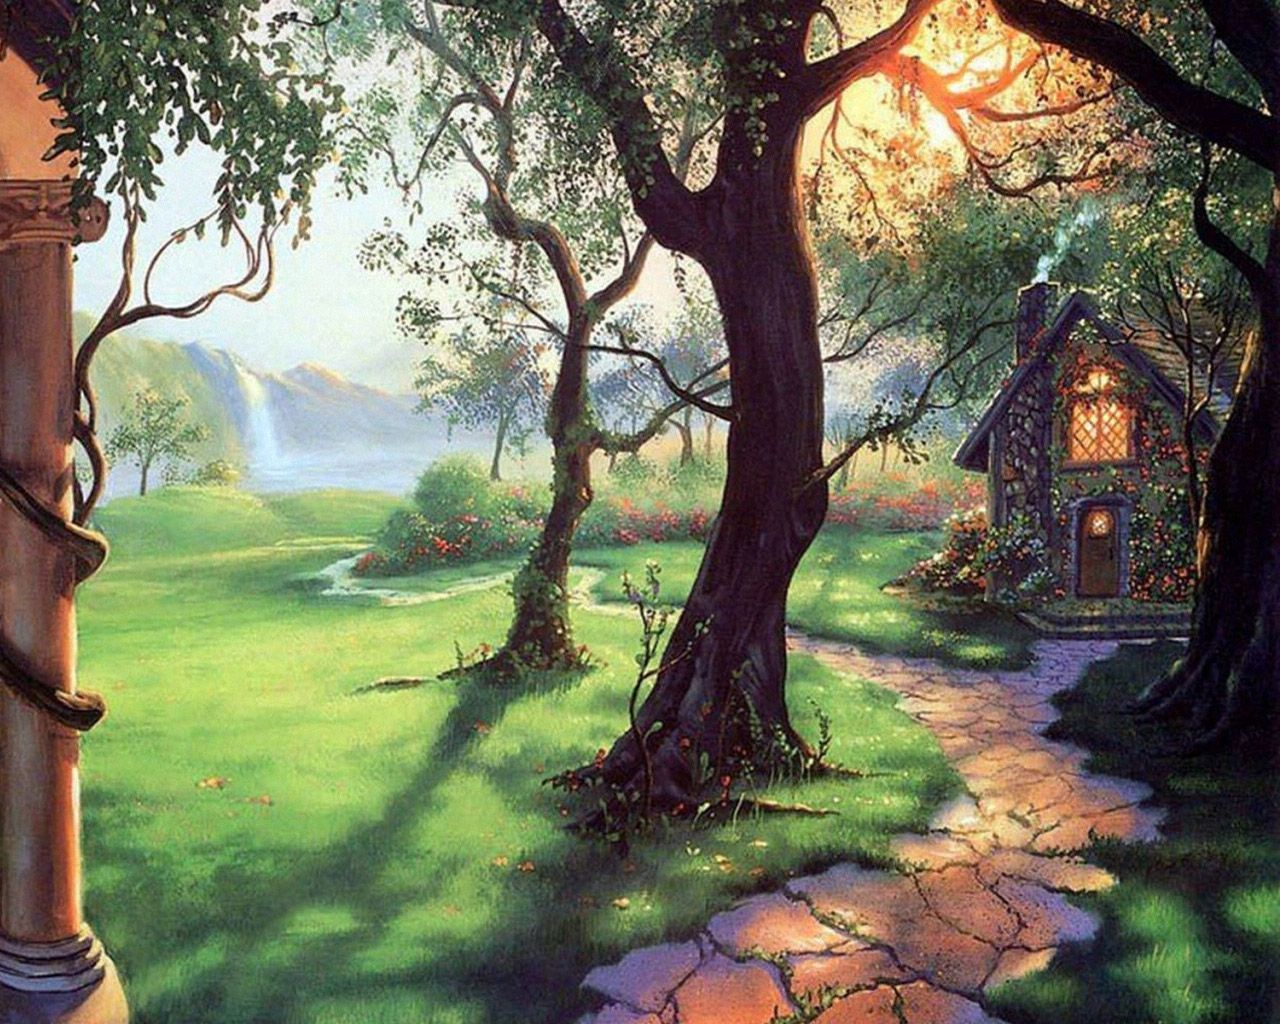 妖精の森の壁紙,自然の風景,自然,木,ペインティング,木本